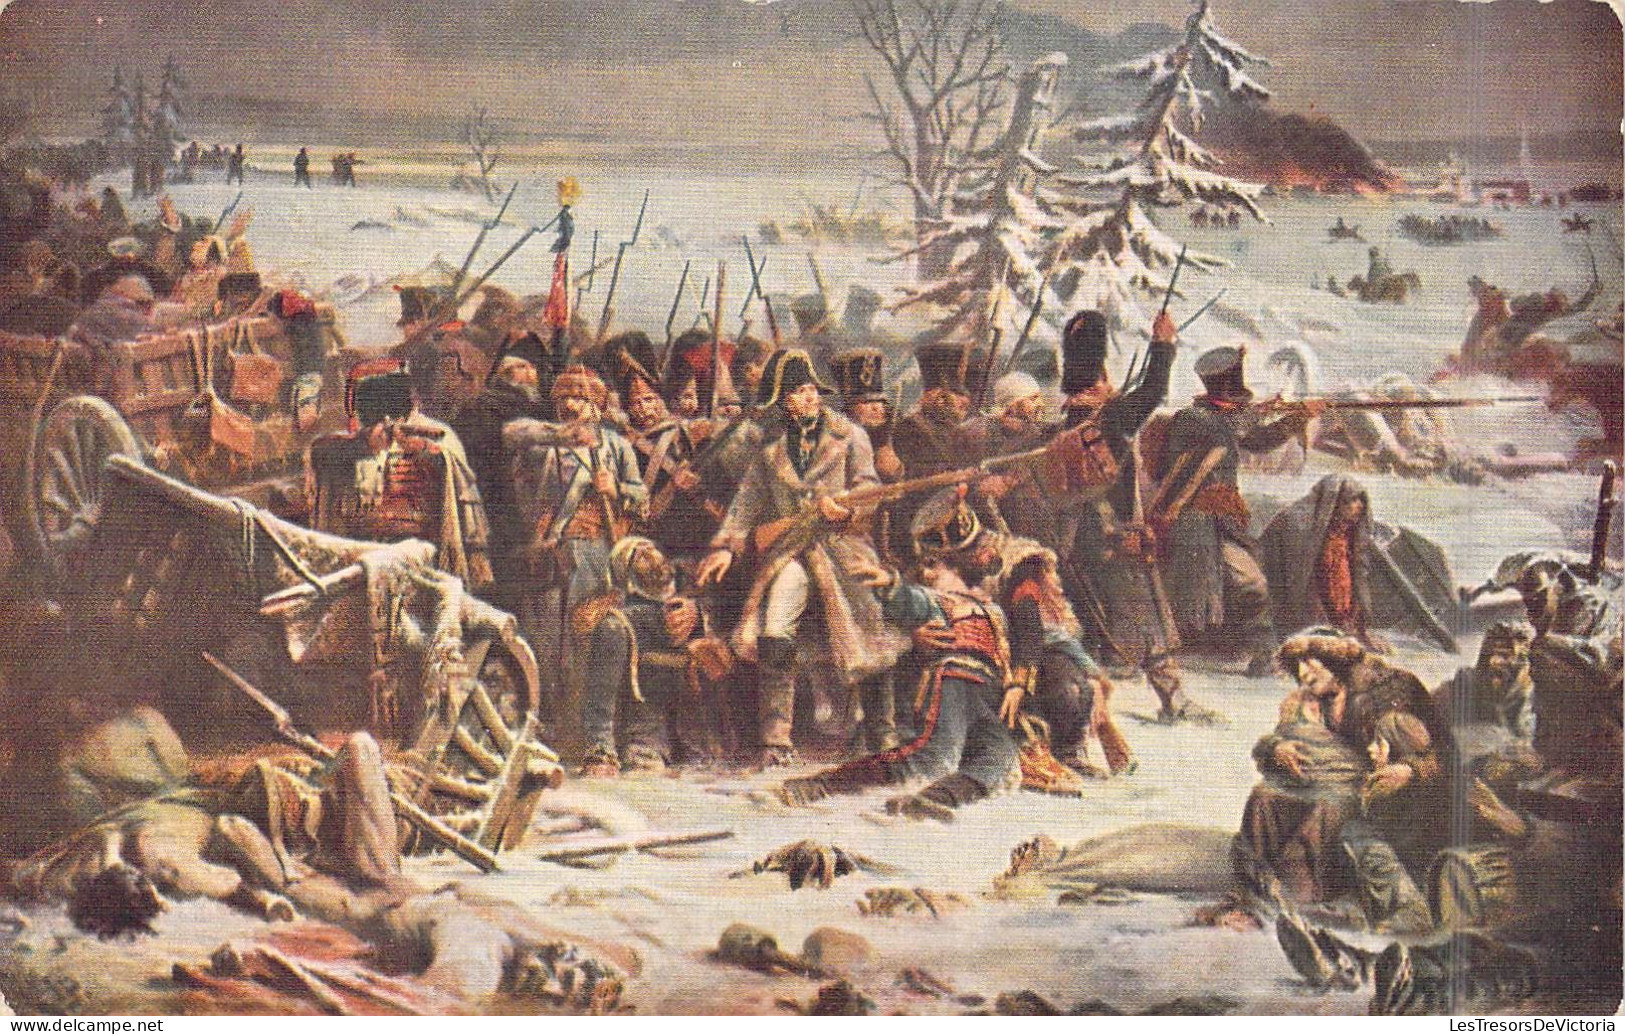 Militaria - Guerres - Retraite De Russie - Décembre 1812 - Carte Postale Ancienne - Andere Kriege